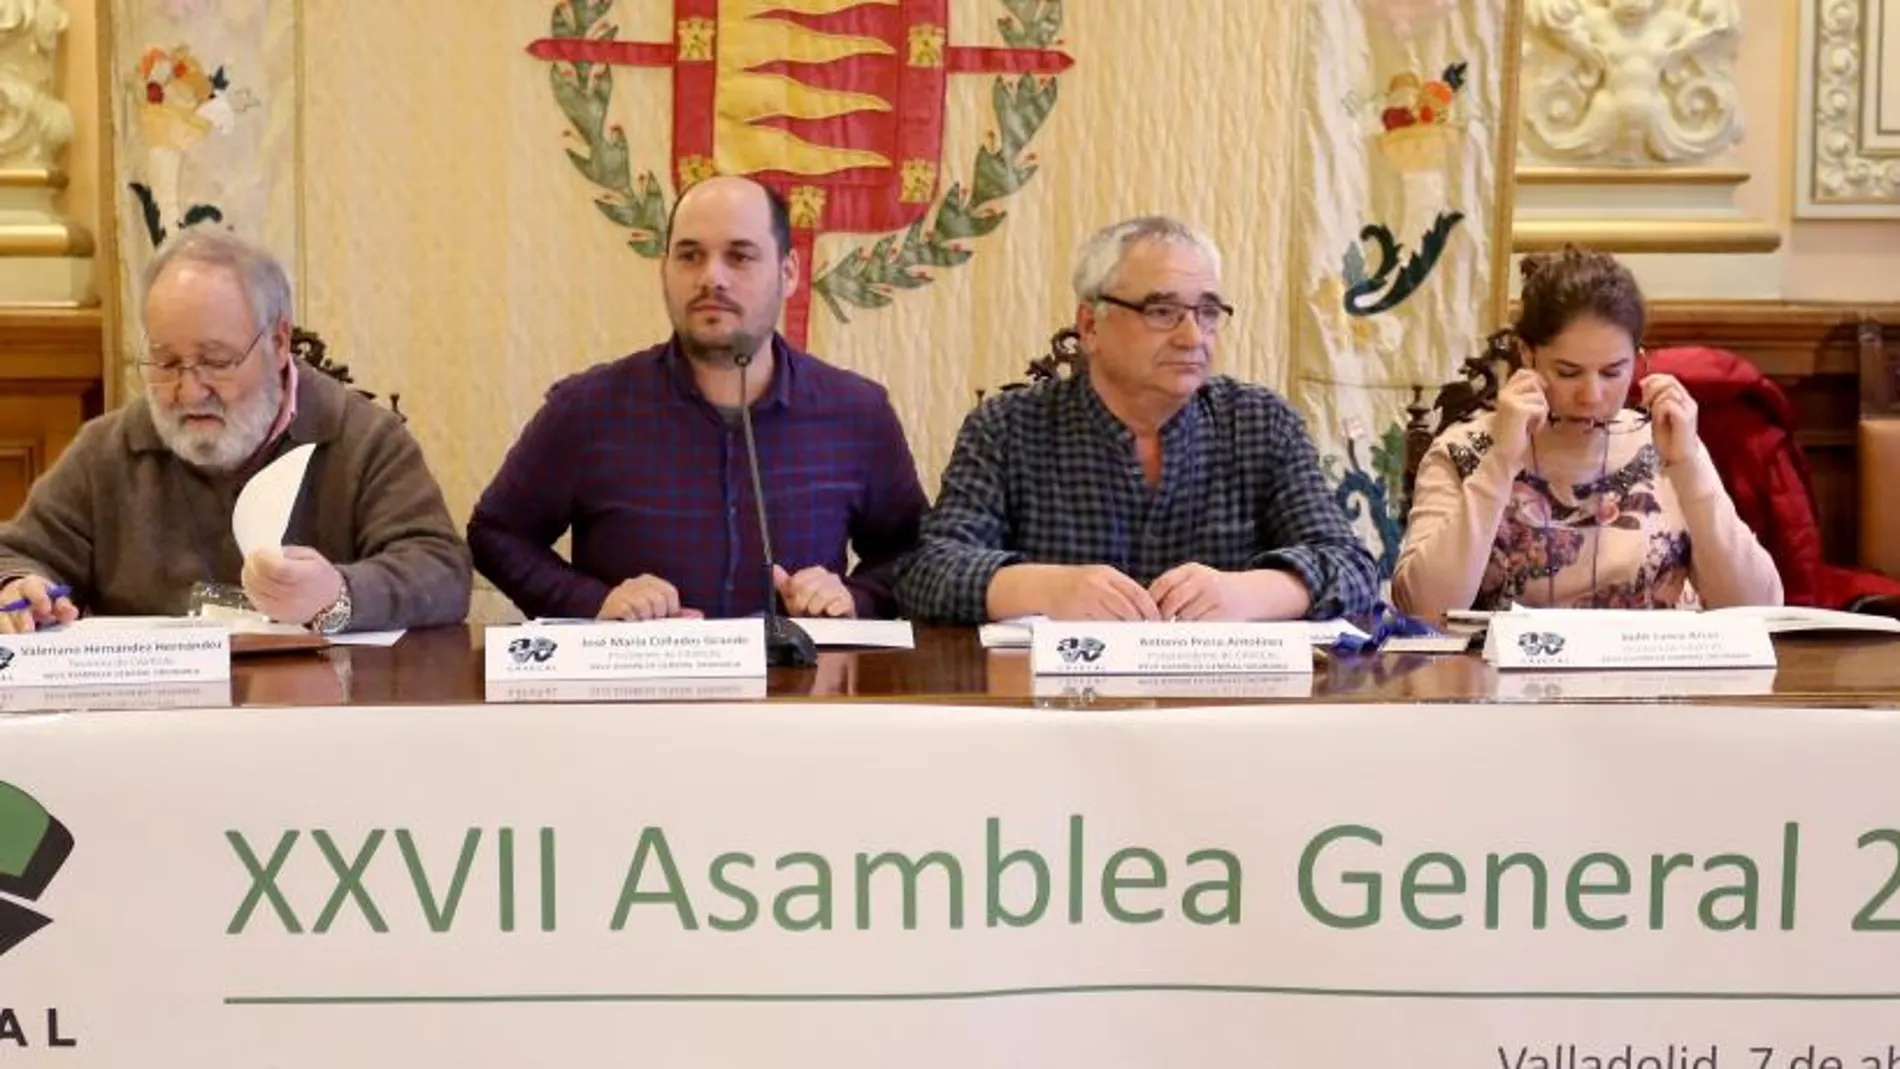 Chema Collados preside la Asamblea de la Federación de Asociaciones Vecinales de Castilla y León, ayer en Valladolid, en compañía del vicepresidente, Antonio Presa, y de los tesoreros Valeriano Hernández y Judit Lamas